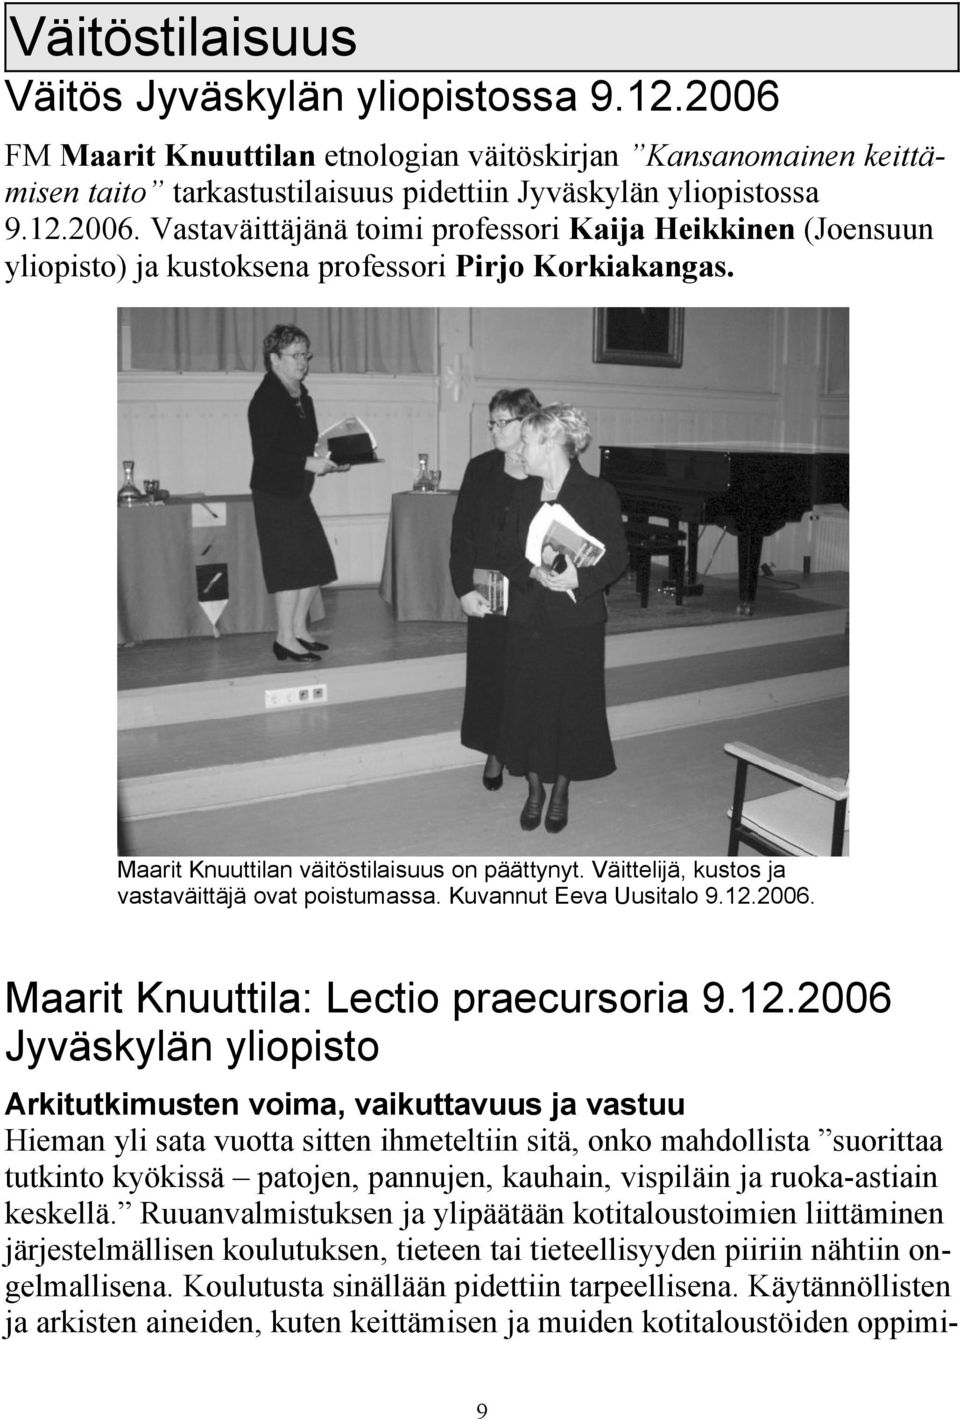 2006. Maarit Knuuttila: Lectio praecursoria 9.12.